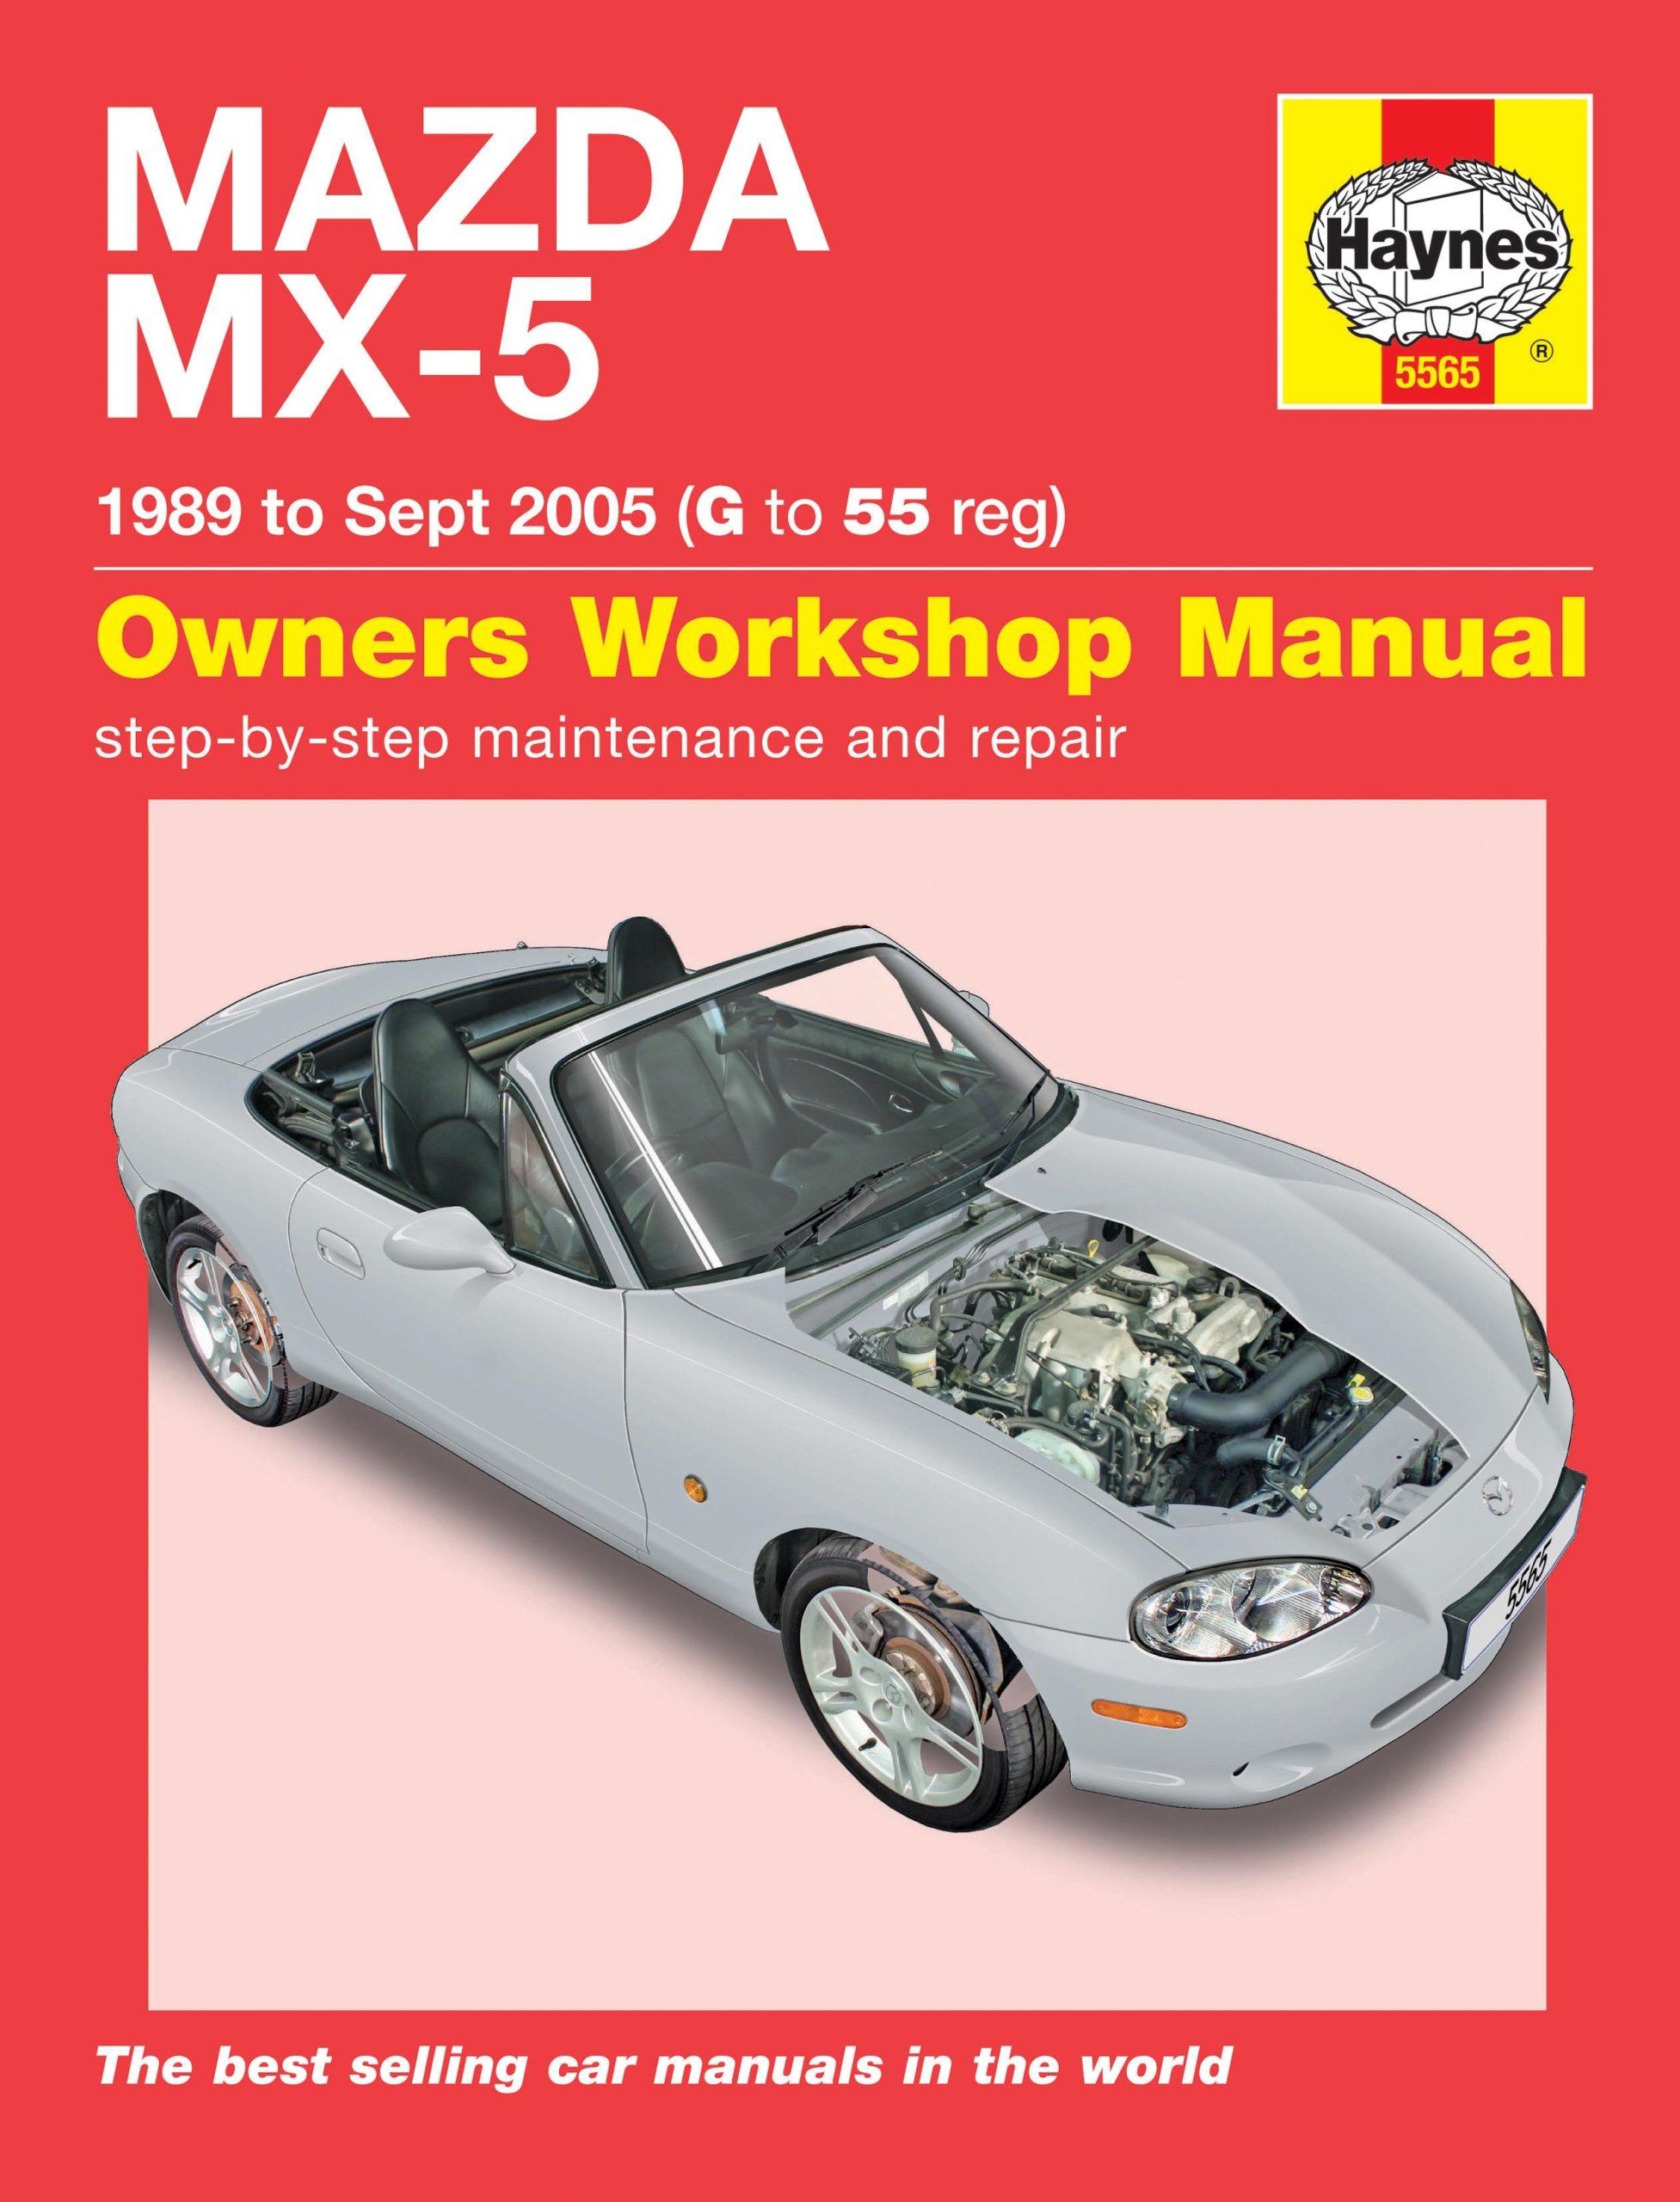 Mazda Mx-5 (1989-2005) Książka Napraw I Obsługi - 146,34 Zł - Allegro.pl - Raty 0%, Darmowa Dostawa Ze Smart! - Pionki - Id Oferty: 7908505037